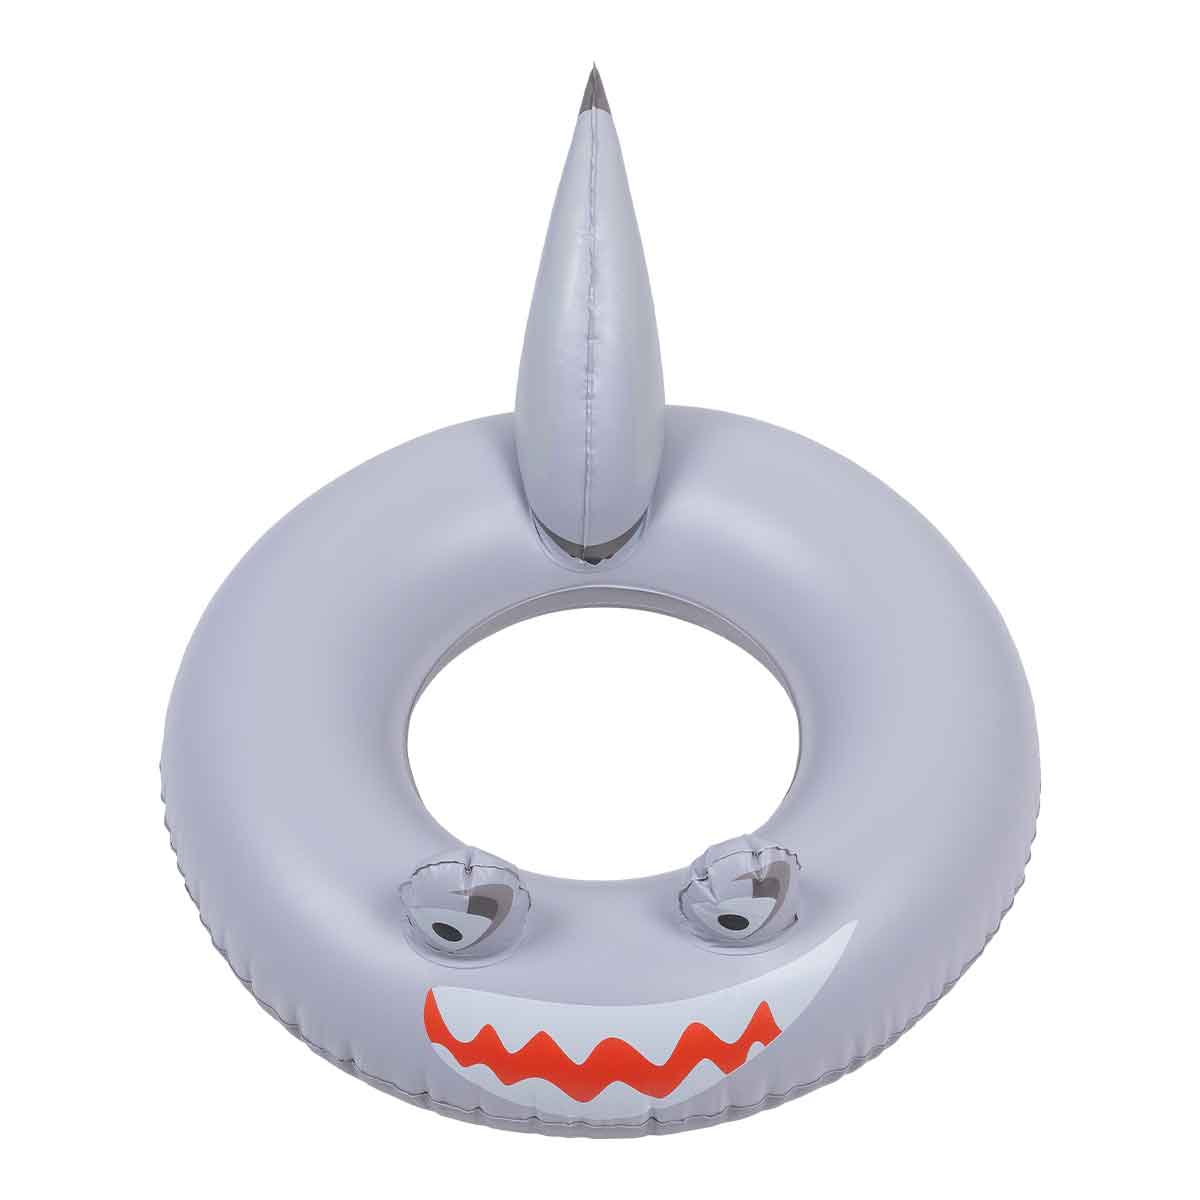 De Swim Essentials animal zwemband 55 cm grey shark is het perfecte accessoire voor jouw kindje tijdens een dagje bij het zwembad of de zee. Deze leuke zwemband heeft de looks van een grijze haai. VanZus.